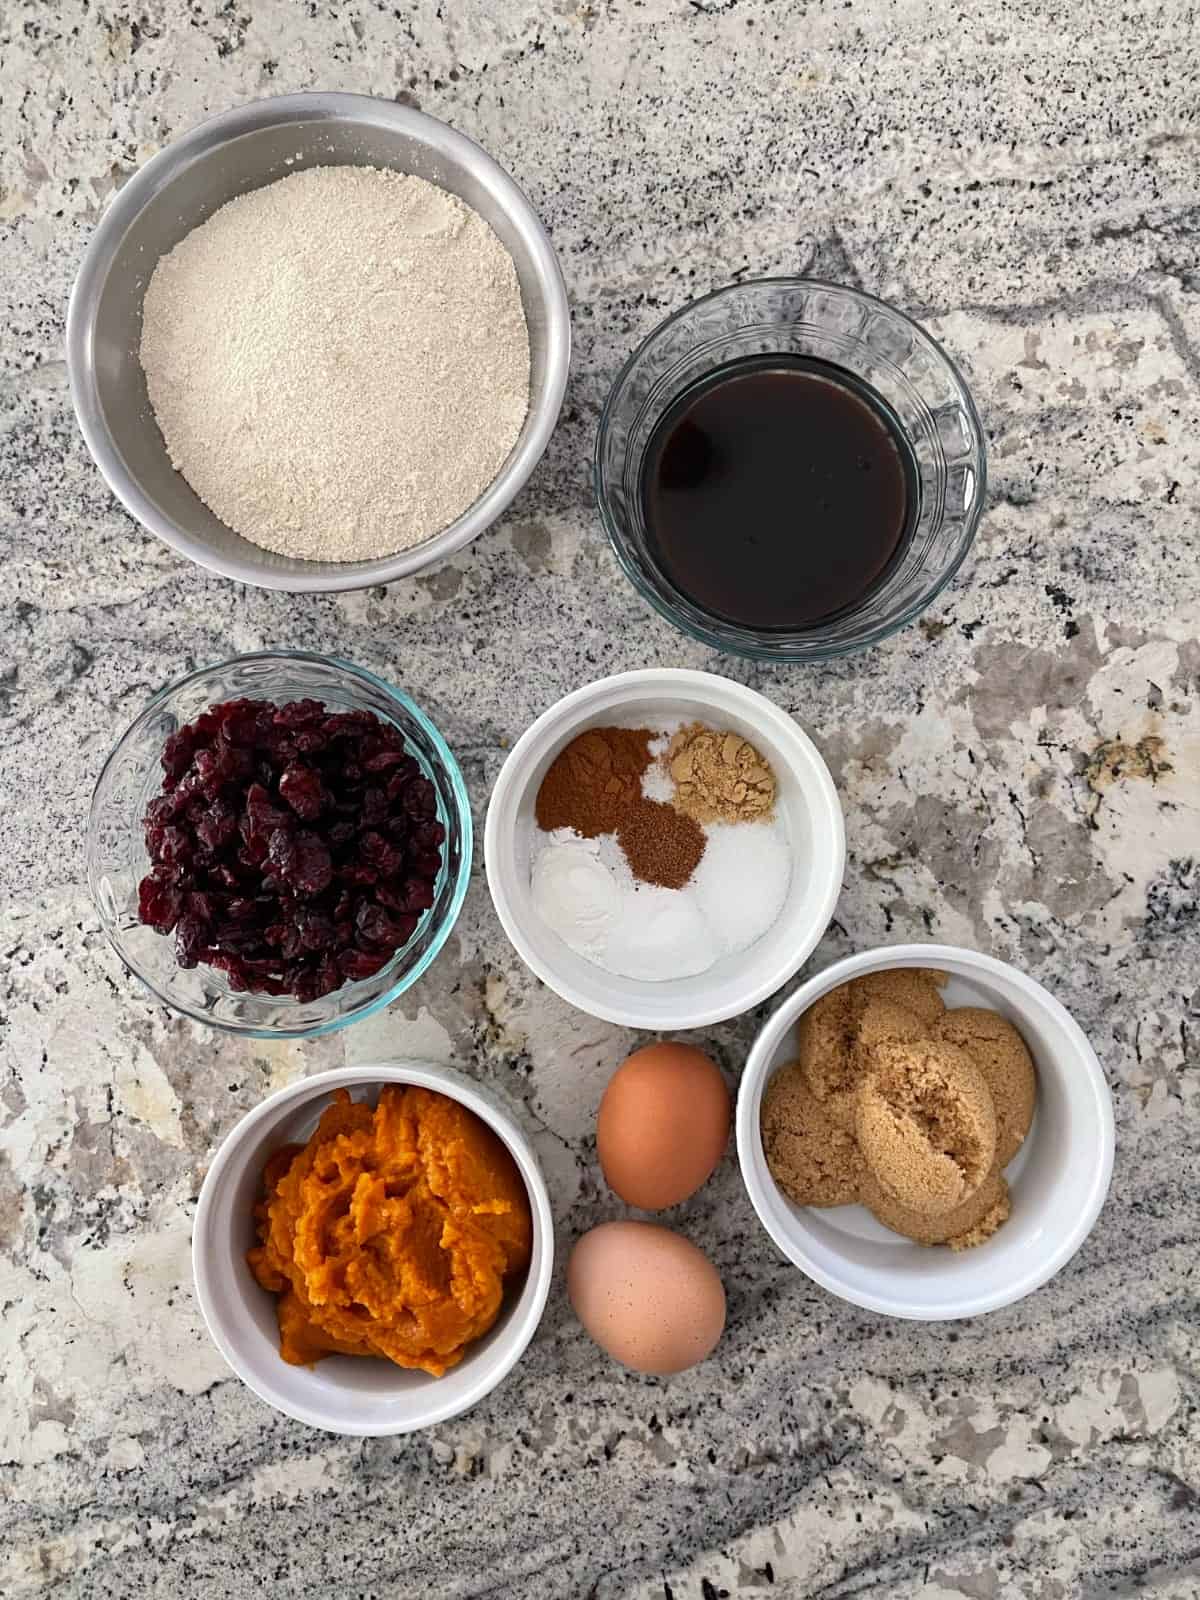 Harina de quinoa, melaza, arándanos secos, puré de calabaza, huevos y panela para hacer galletas.